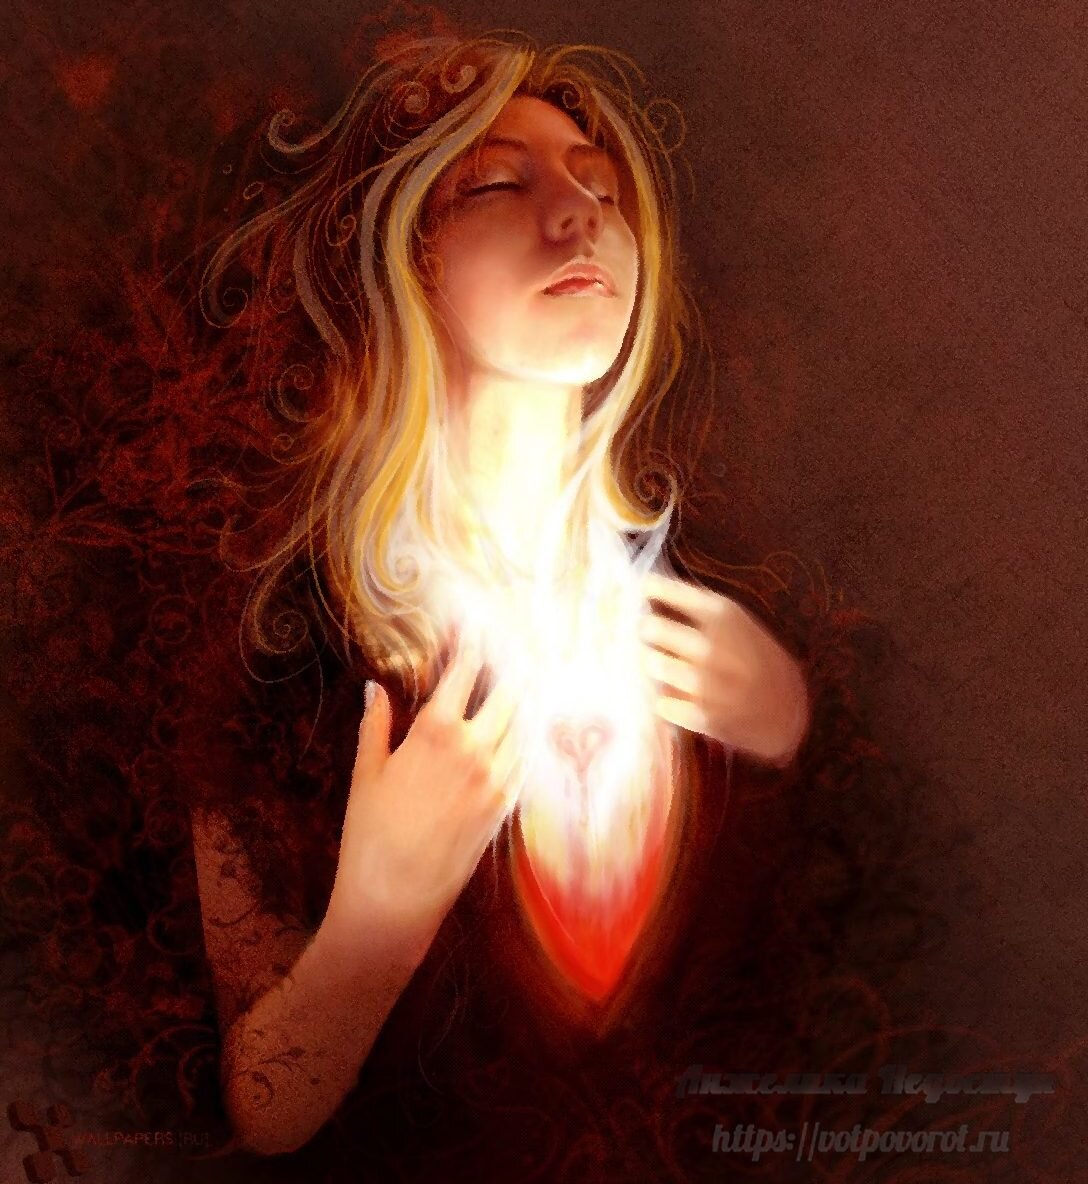 Свет внутри каждого. Девушка - свет в сердце. Огонь внутри. Сердце души. Свет внутри женщины.